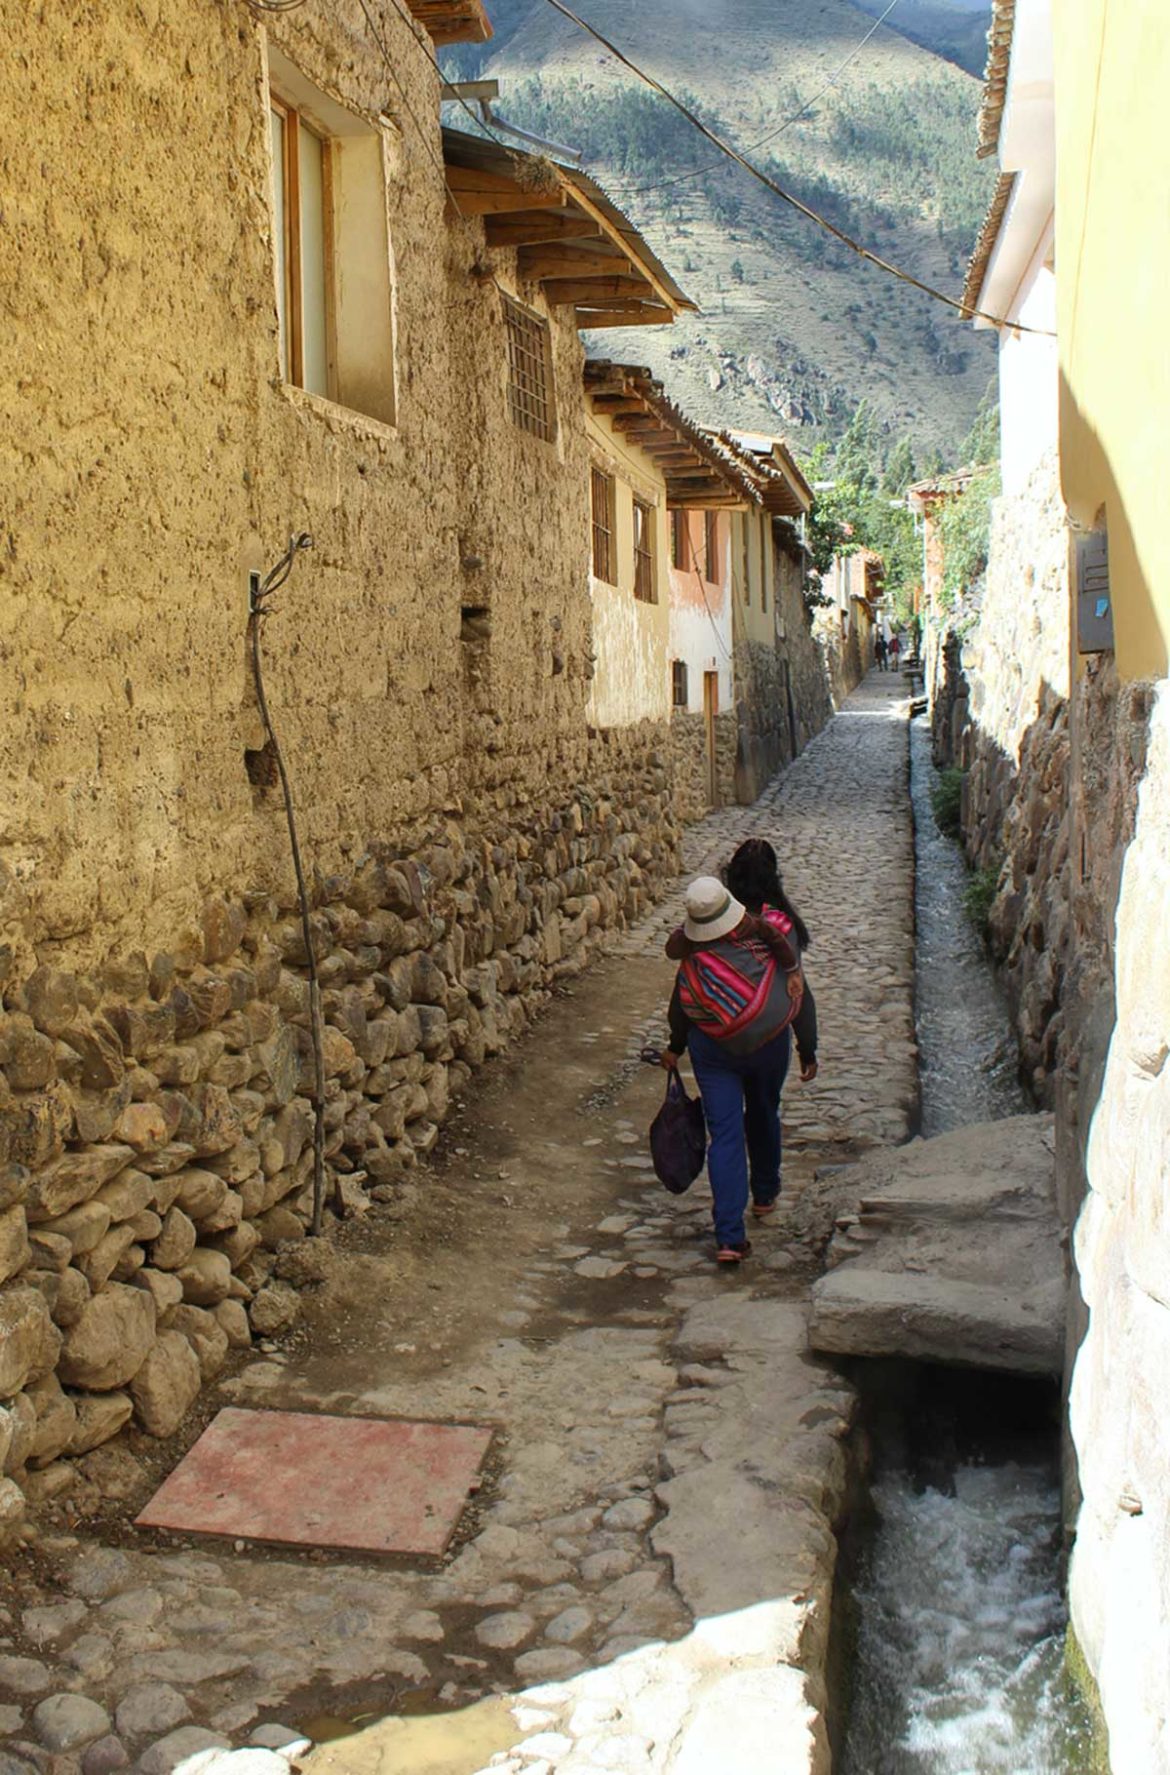 Fotos do Peru - Ollantaytambo, no Vale Sagrado